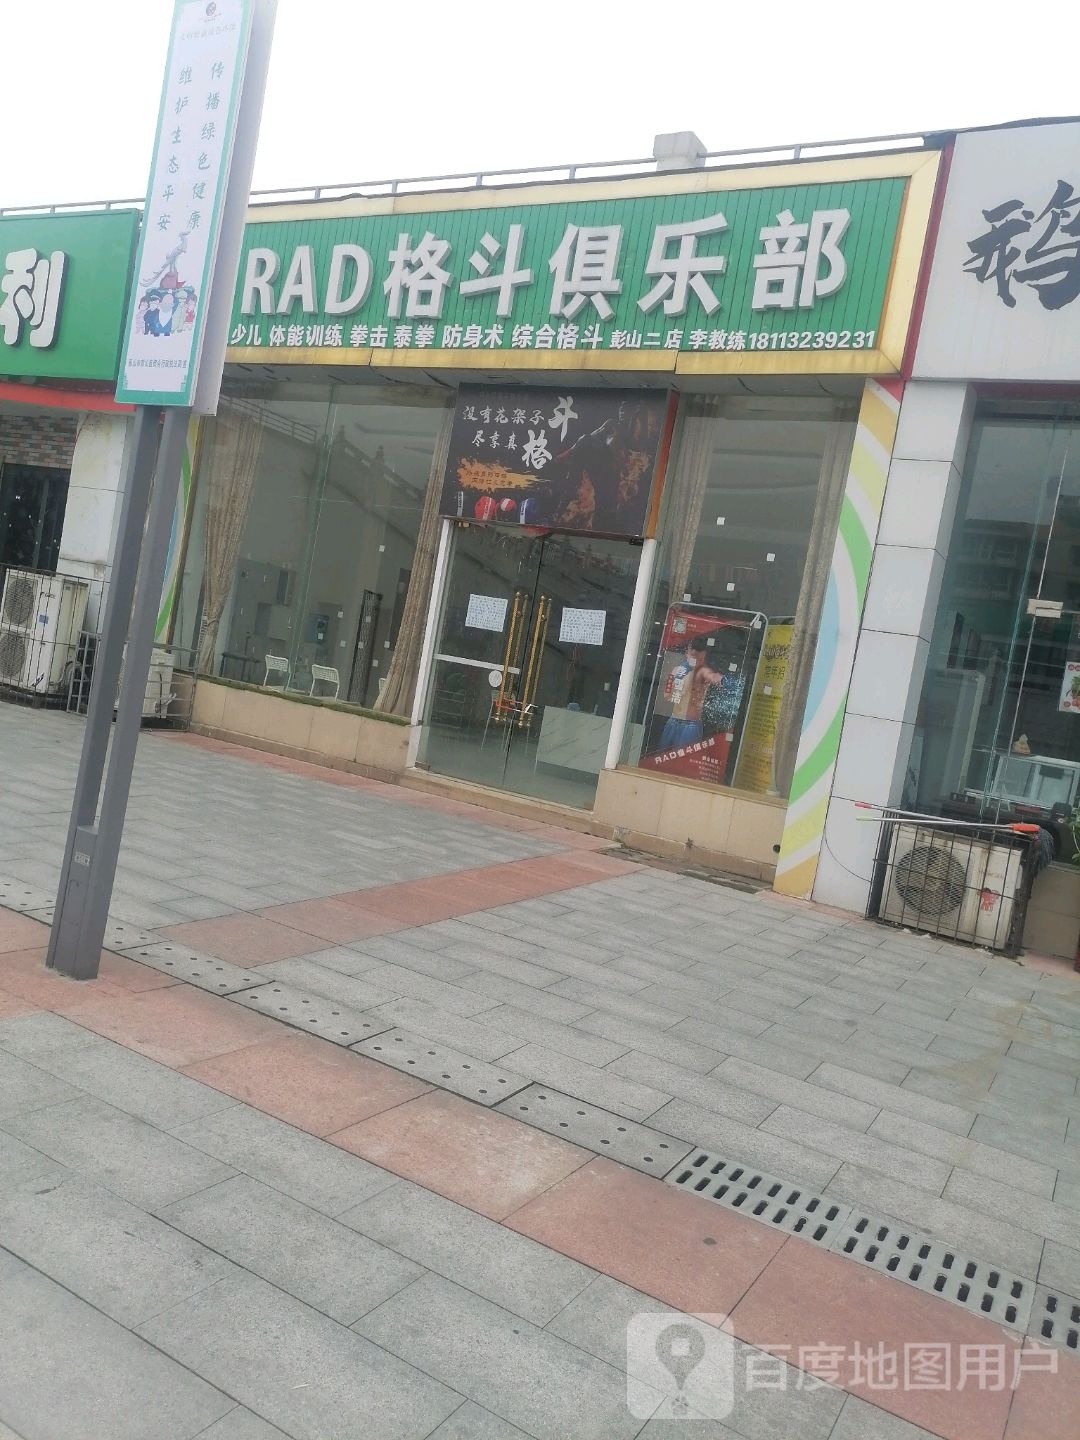 RAD格斗俱乐部(彭祖广场二店)